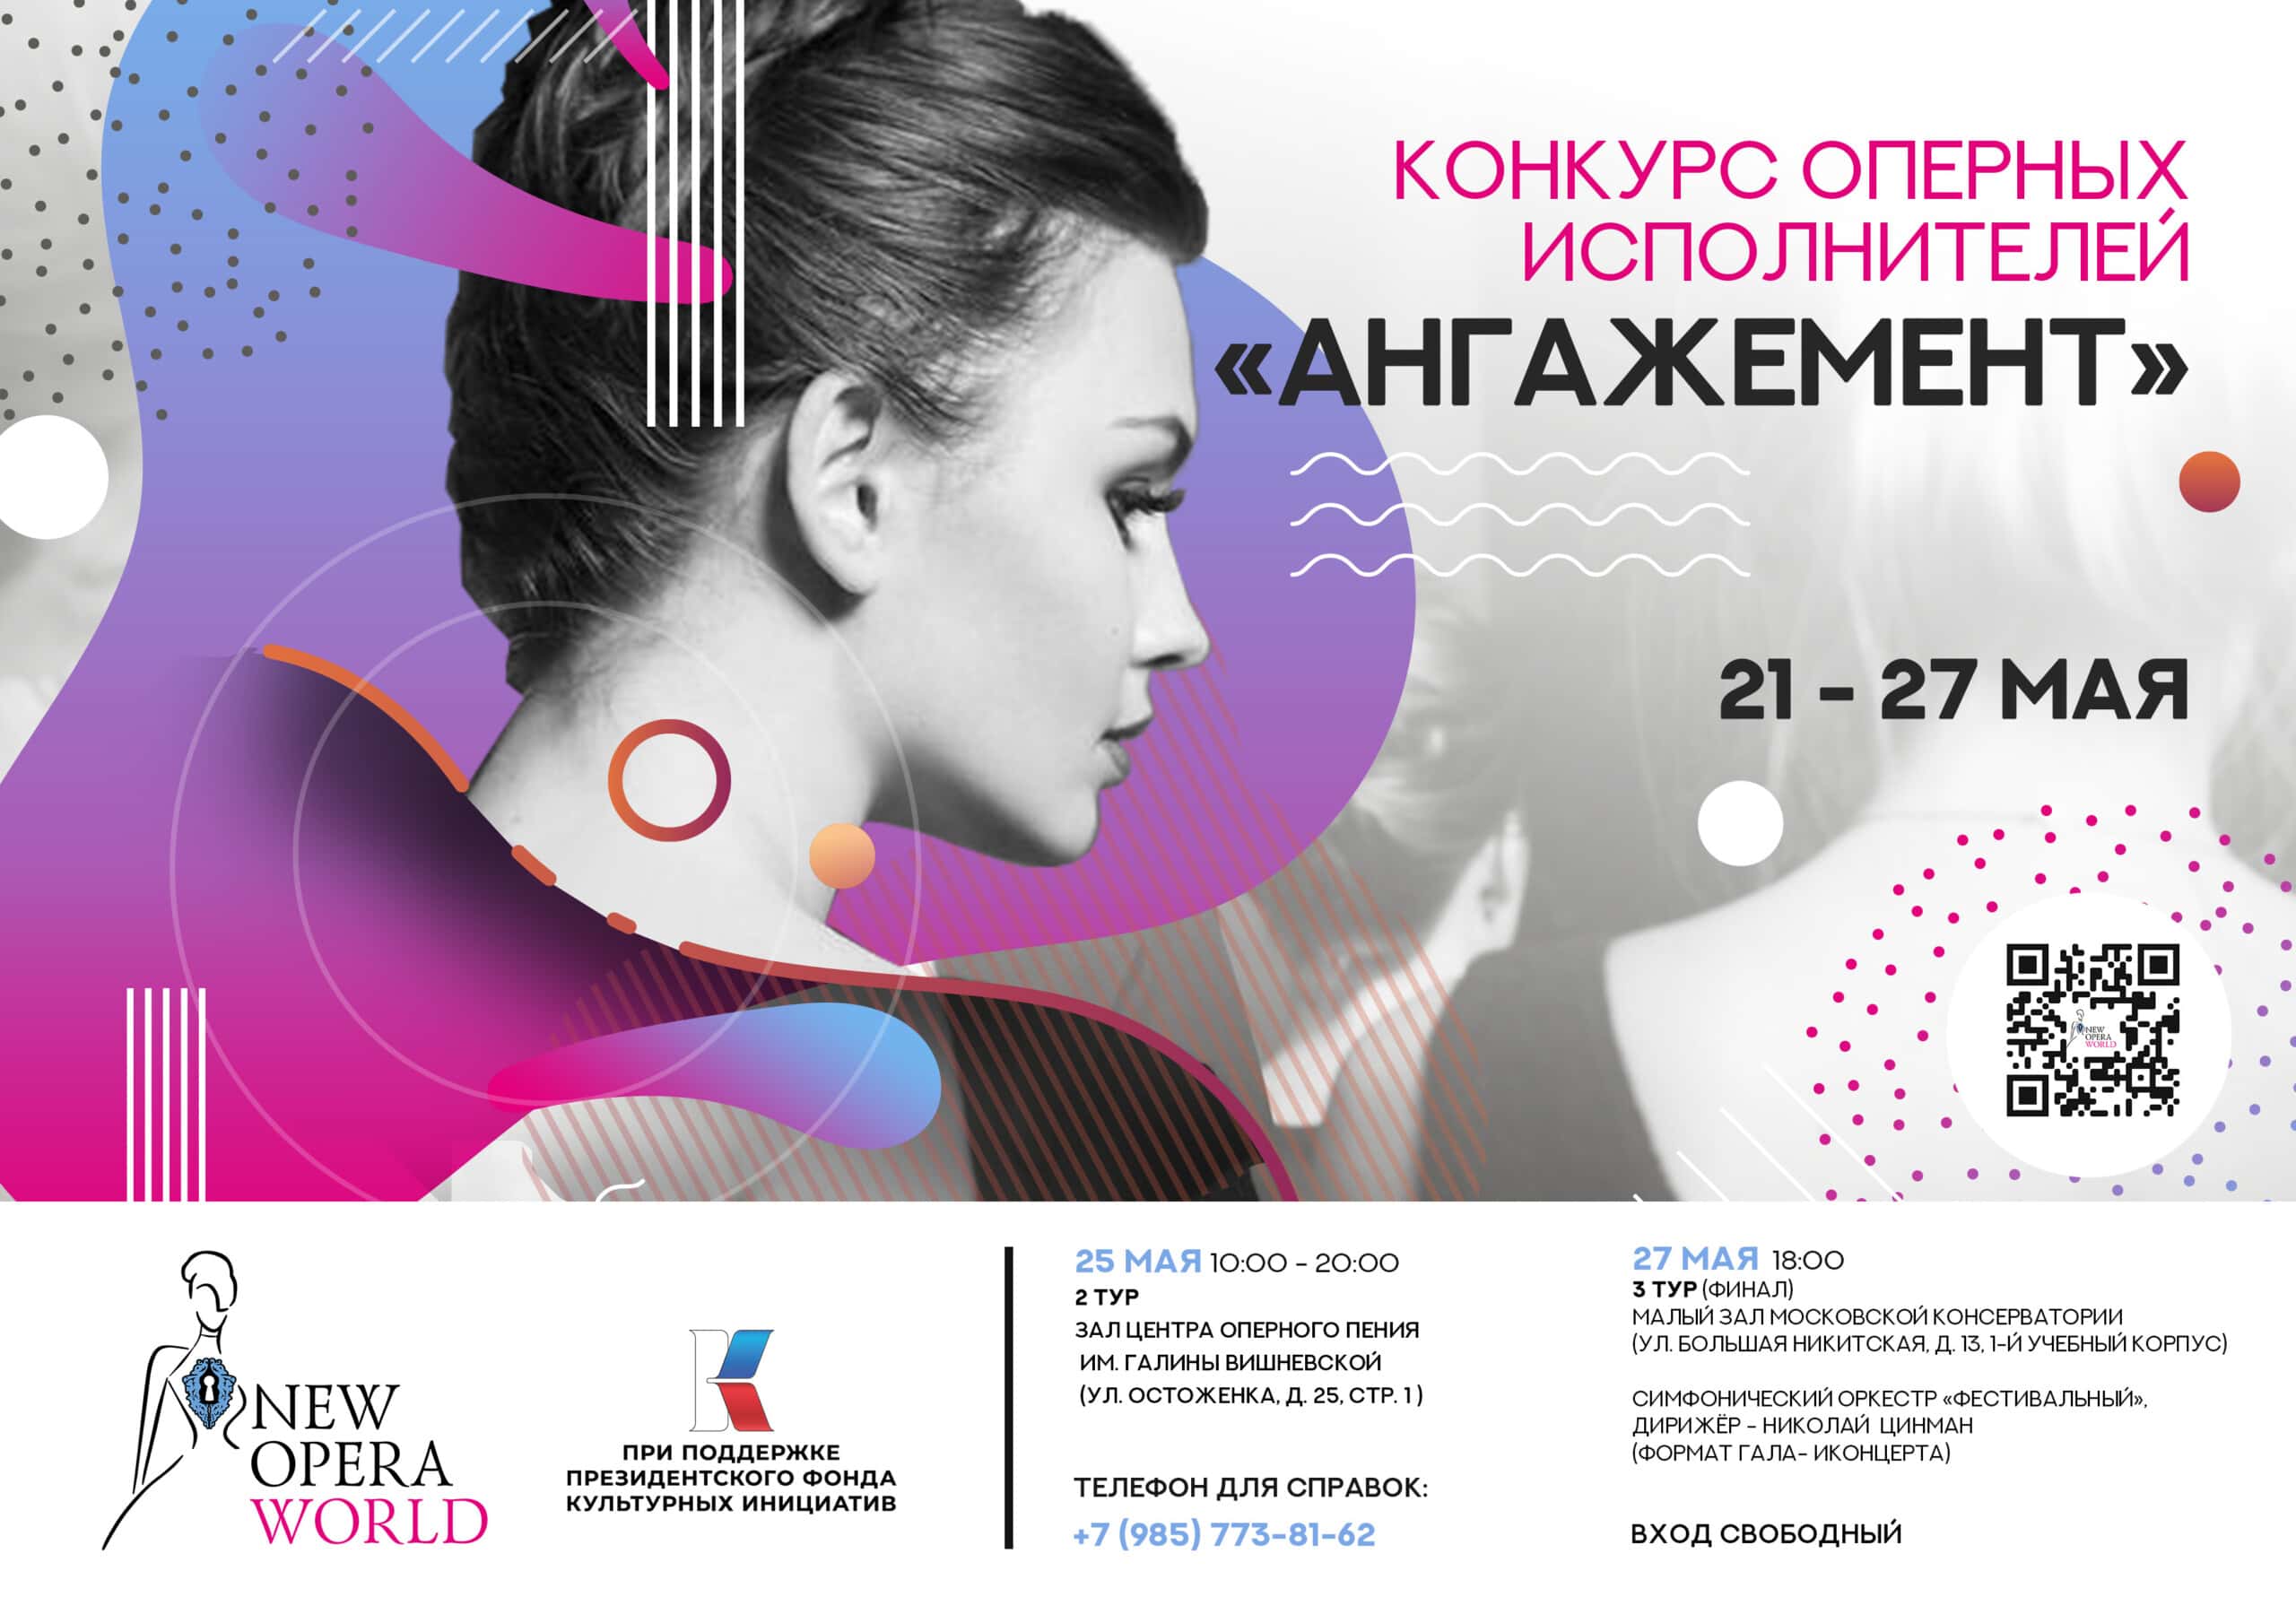 بنیاد جهان اپرا جدید مسابقه اپرای نامزدی را در مسکو راه اندازی می کند